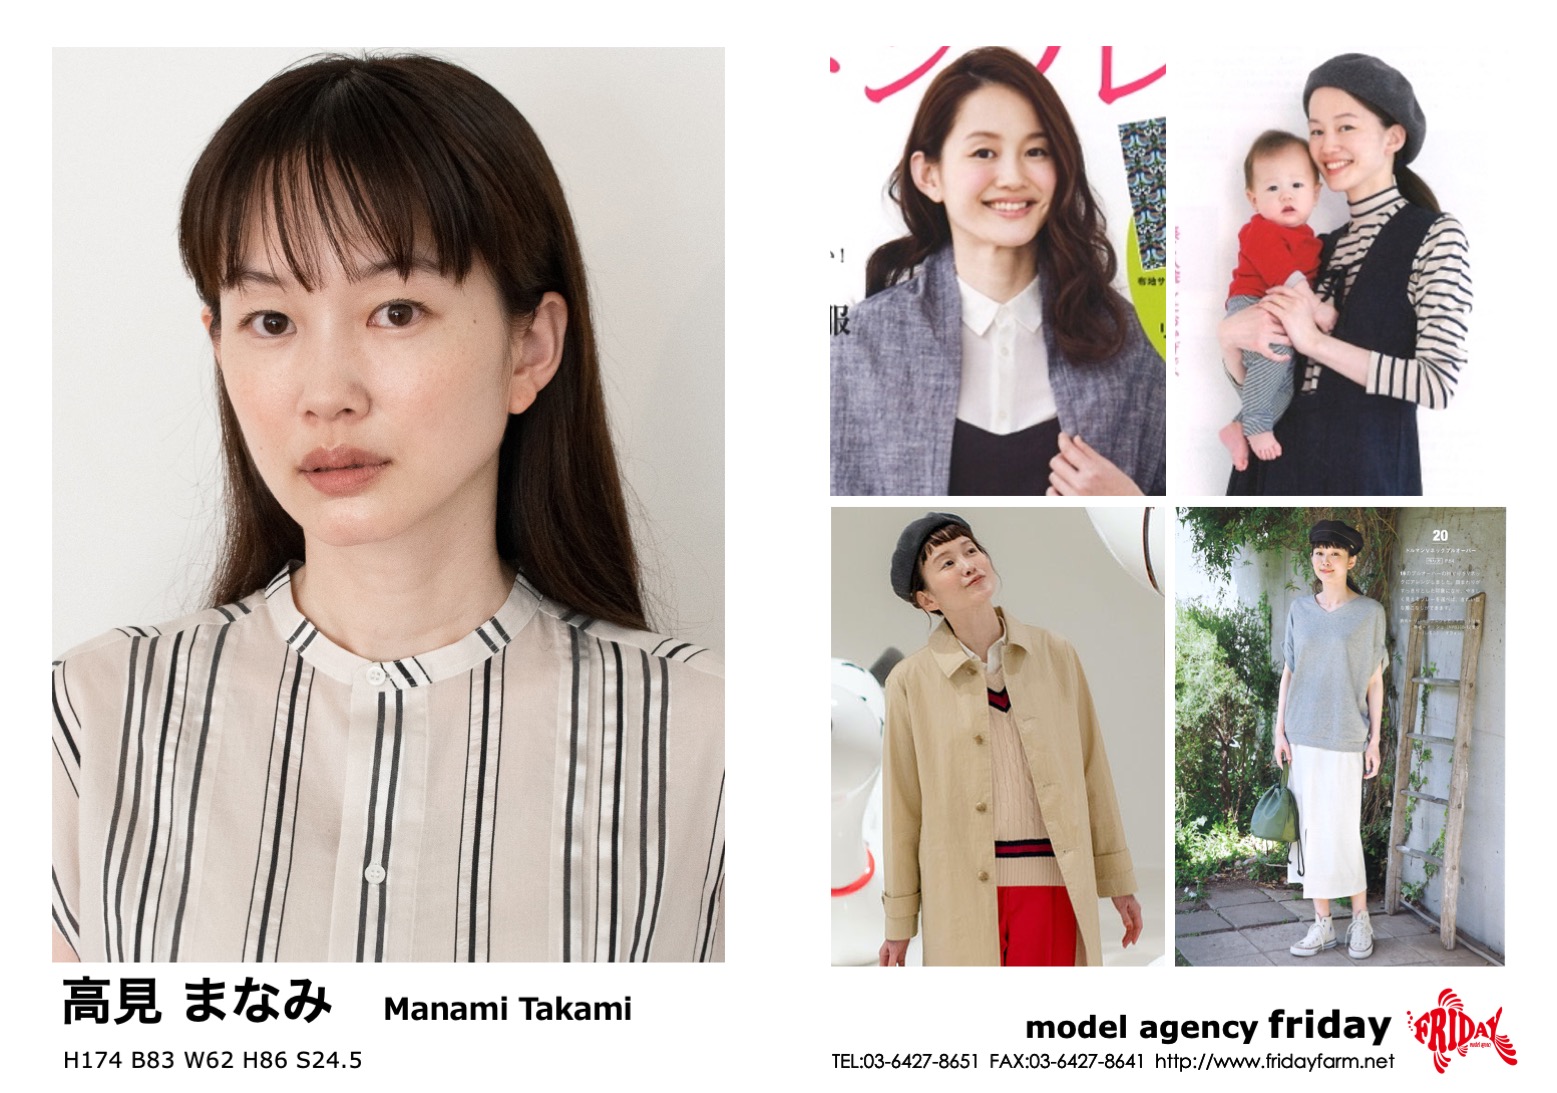 高見 まなみ - Manami Takami | model agency friday